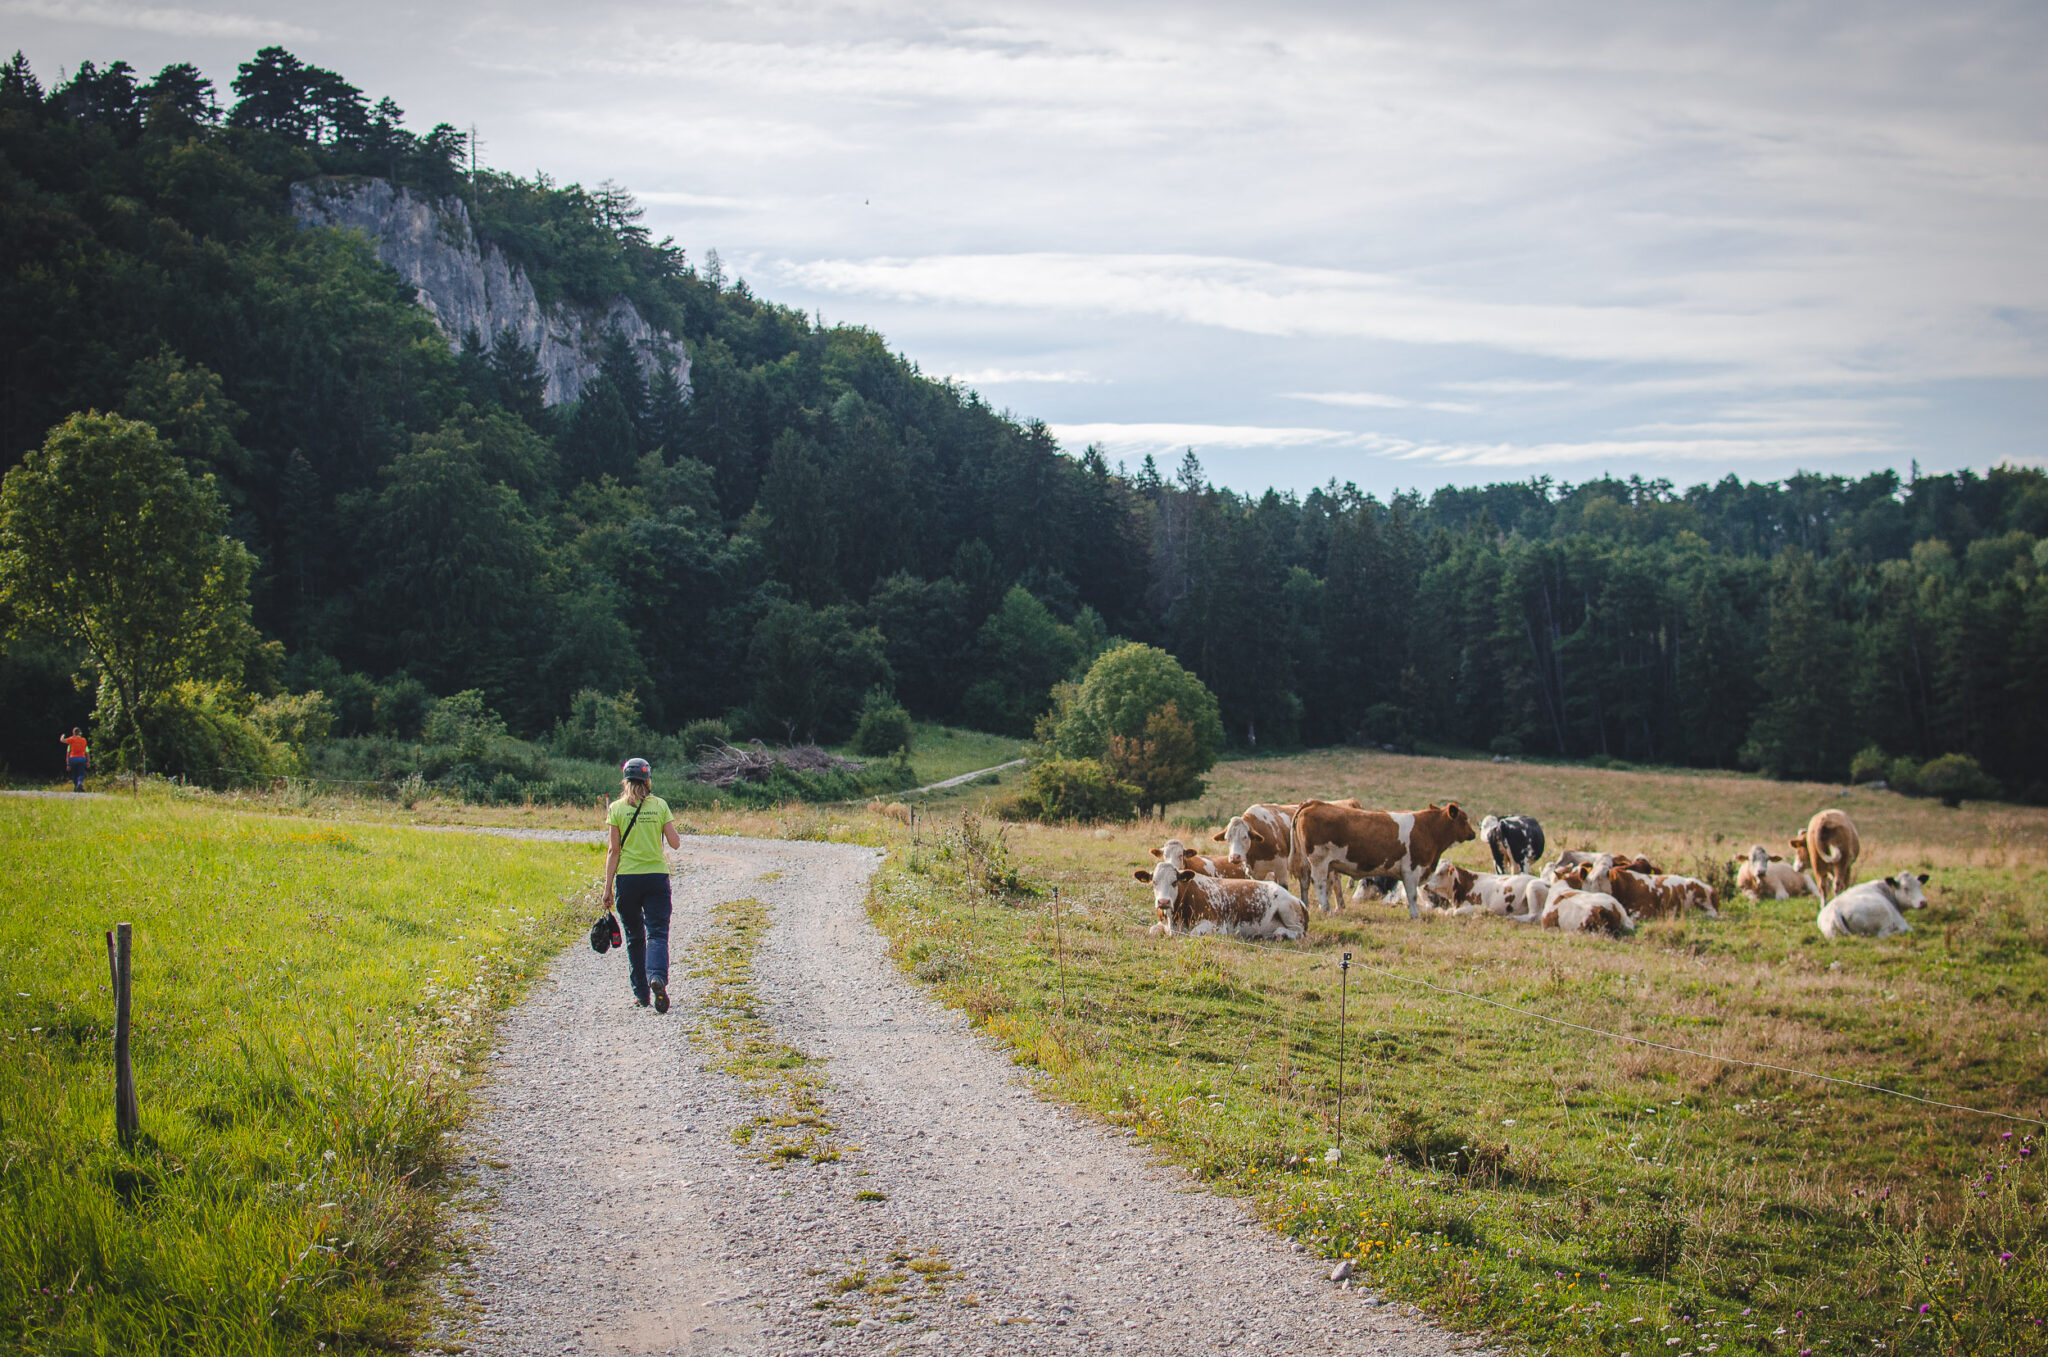 Na zdjęciu widać idącą turystkę w kasku. Po prawej stronie pasące się krowy. W tle las ze skałą